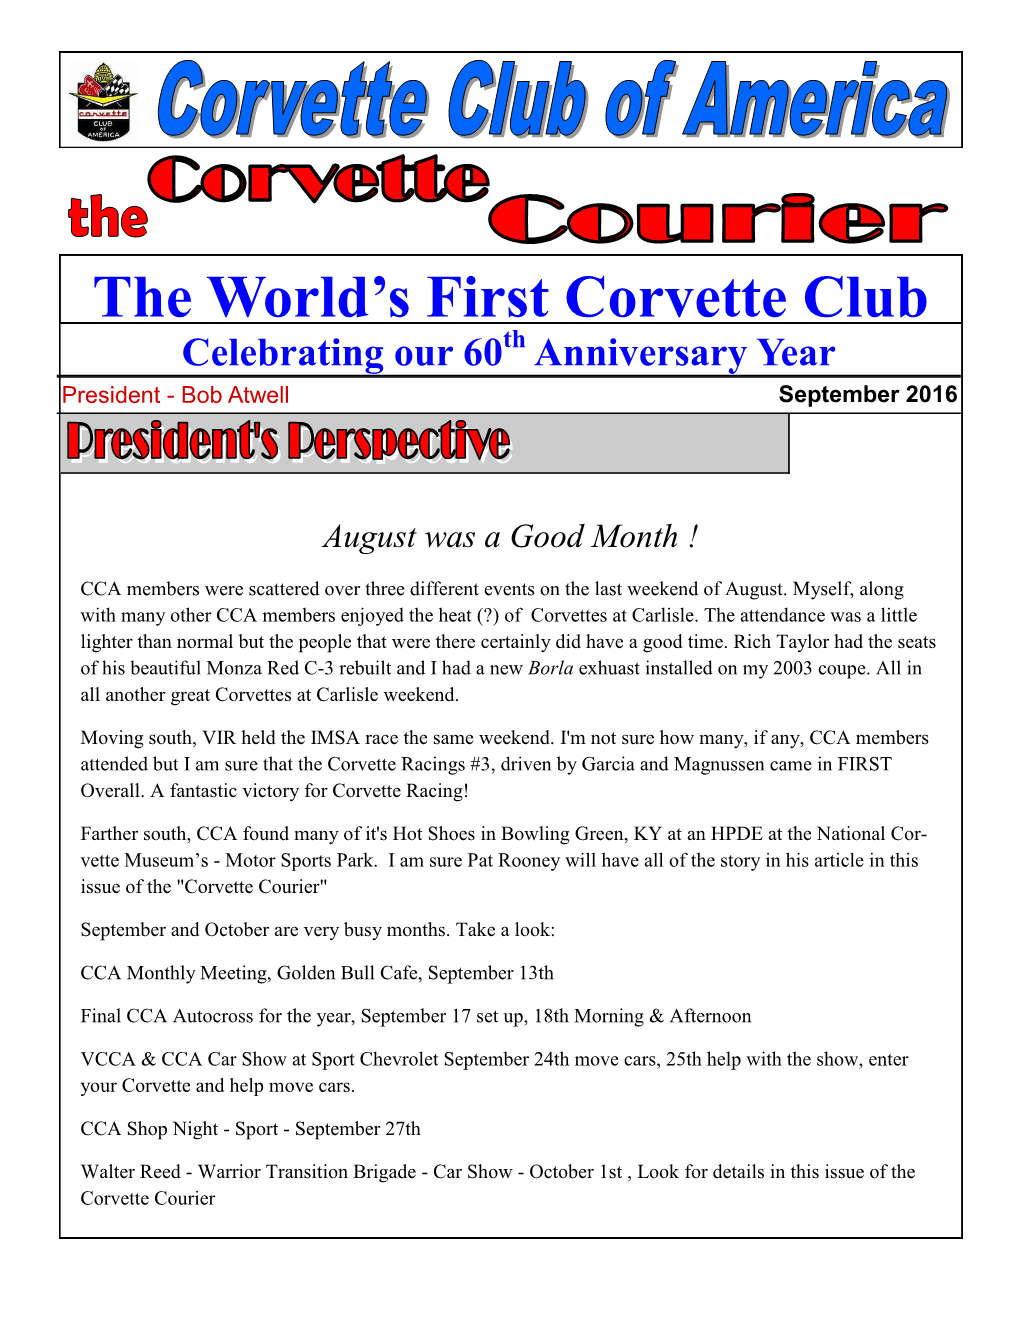 Corvette Courier Newsletter